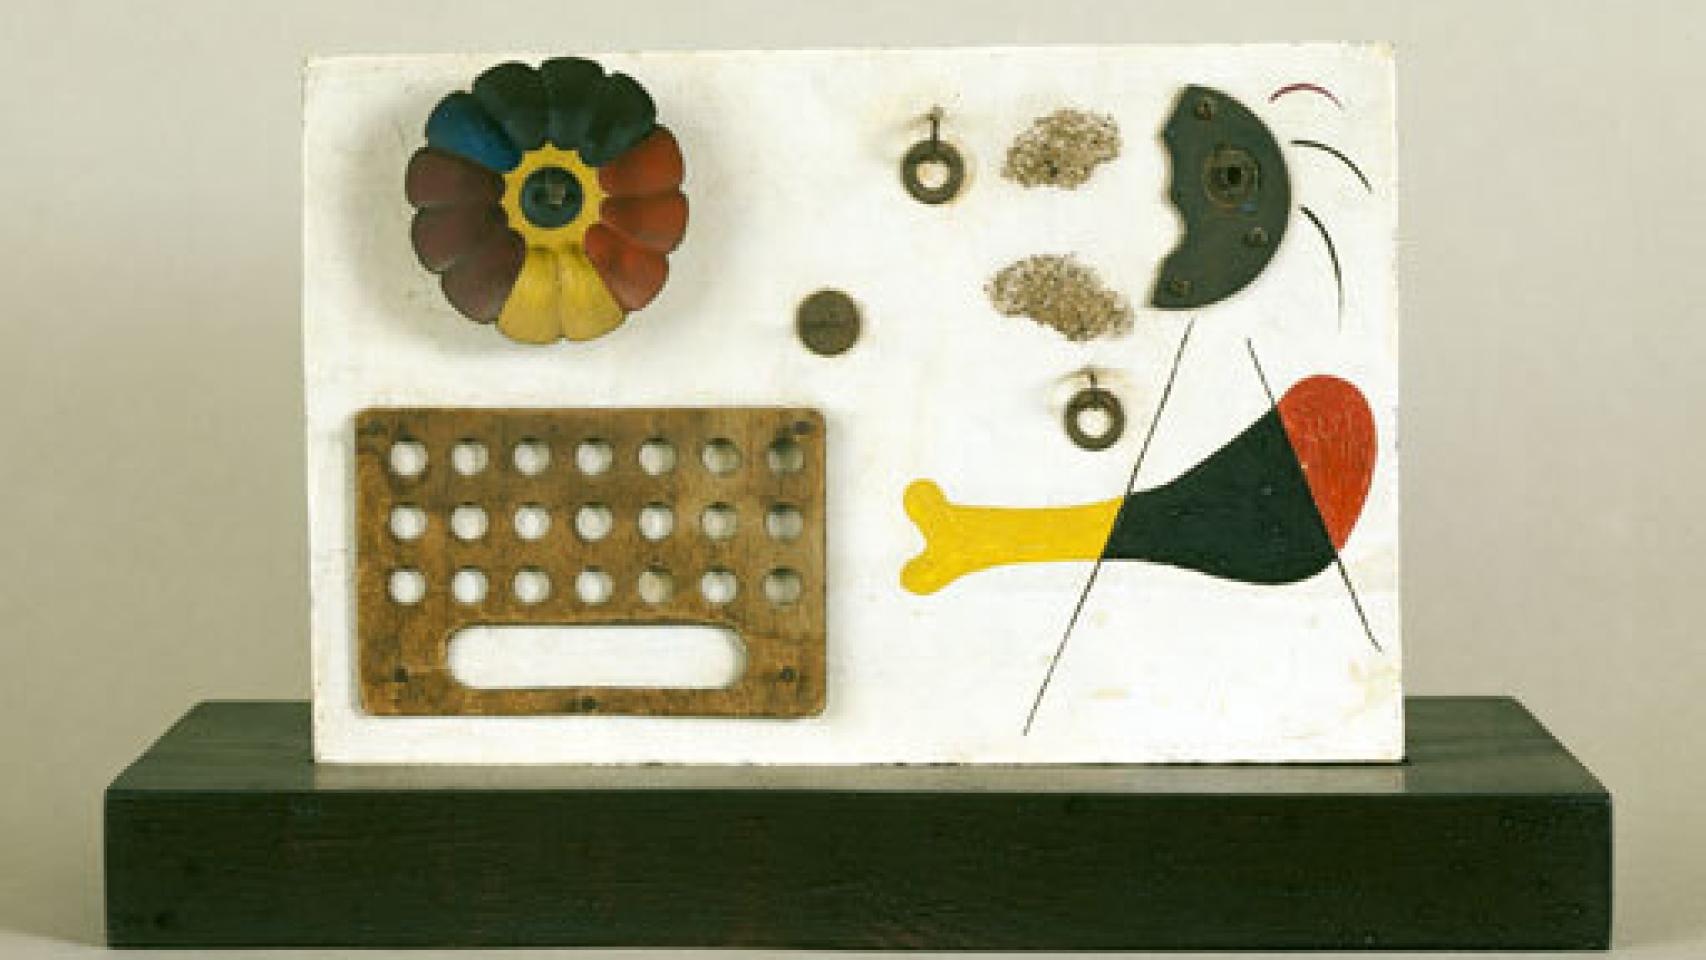 Image: Expedición al universo Miró